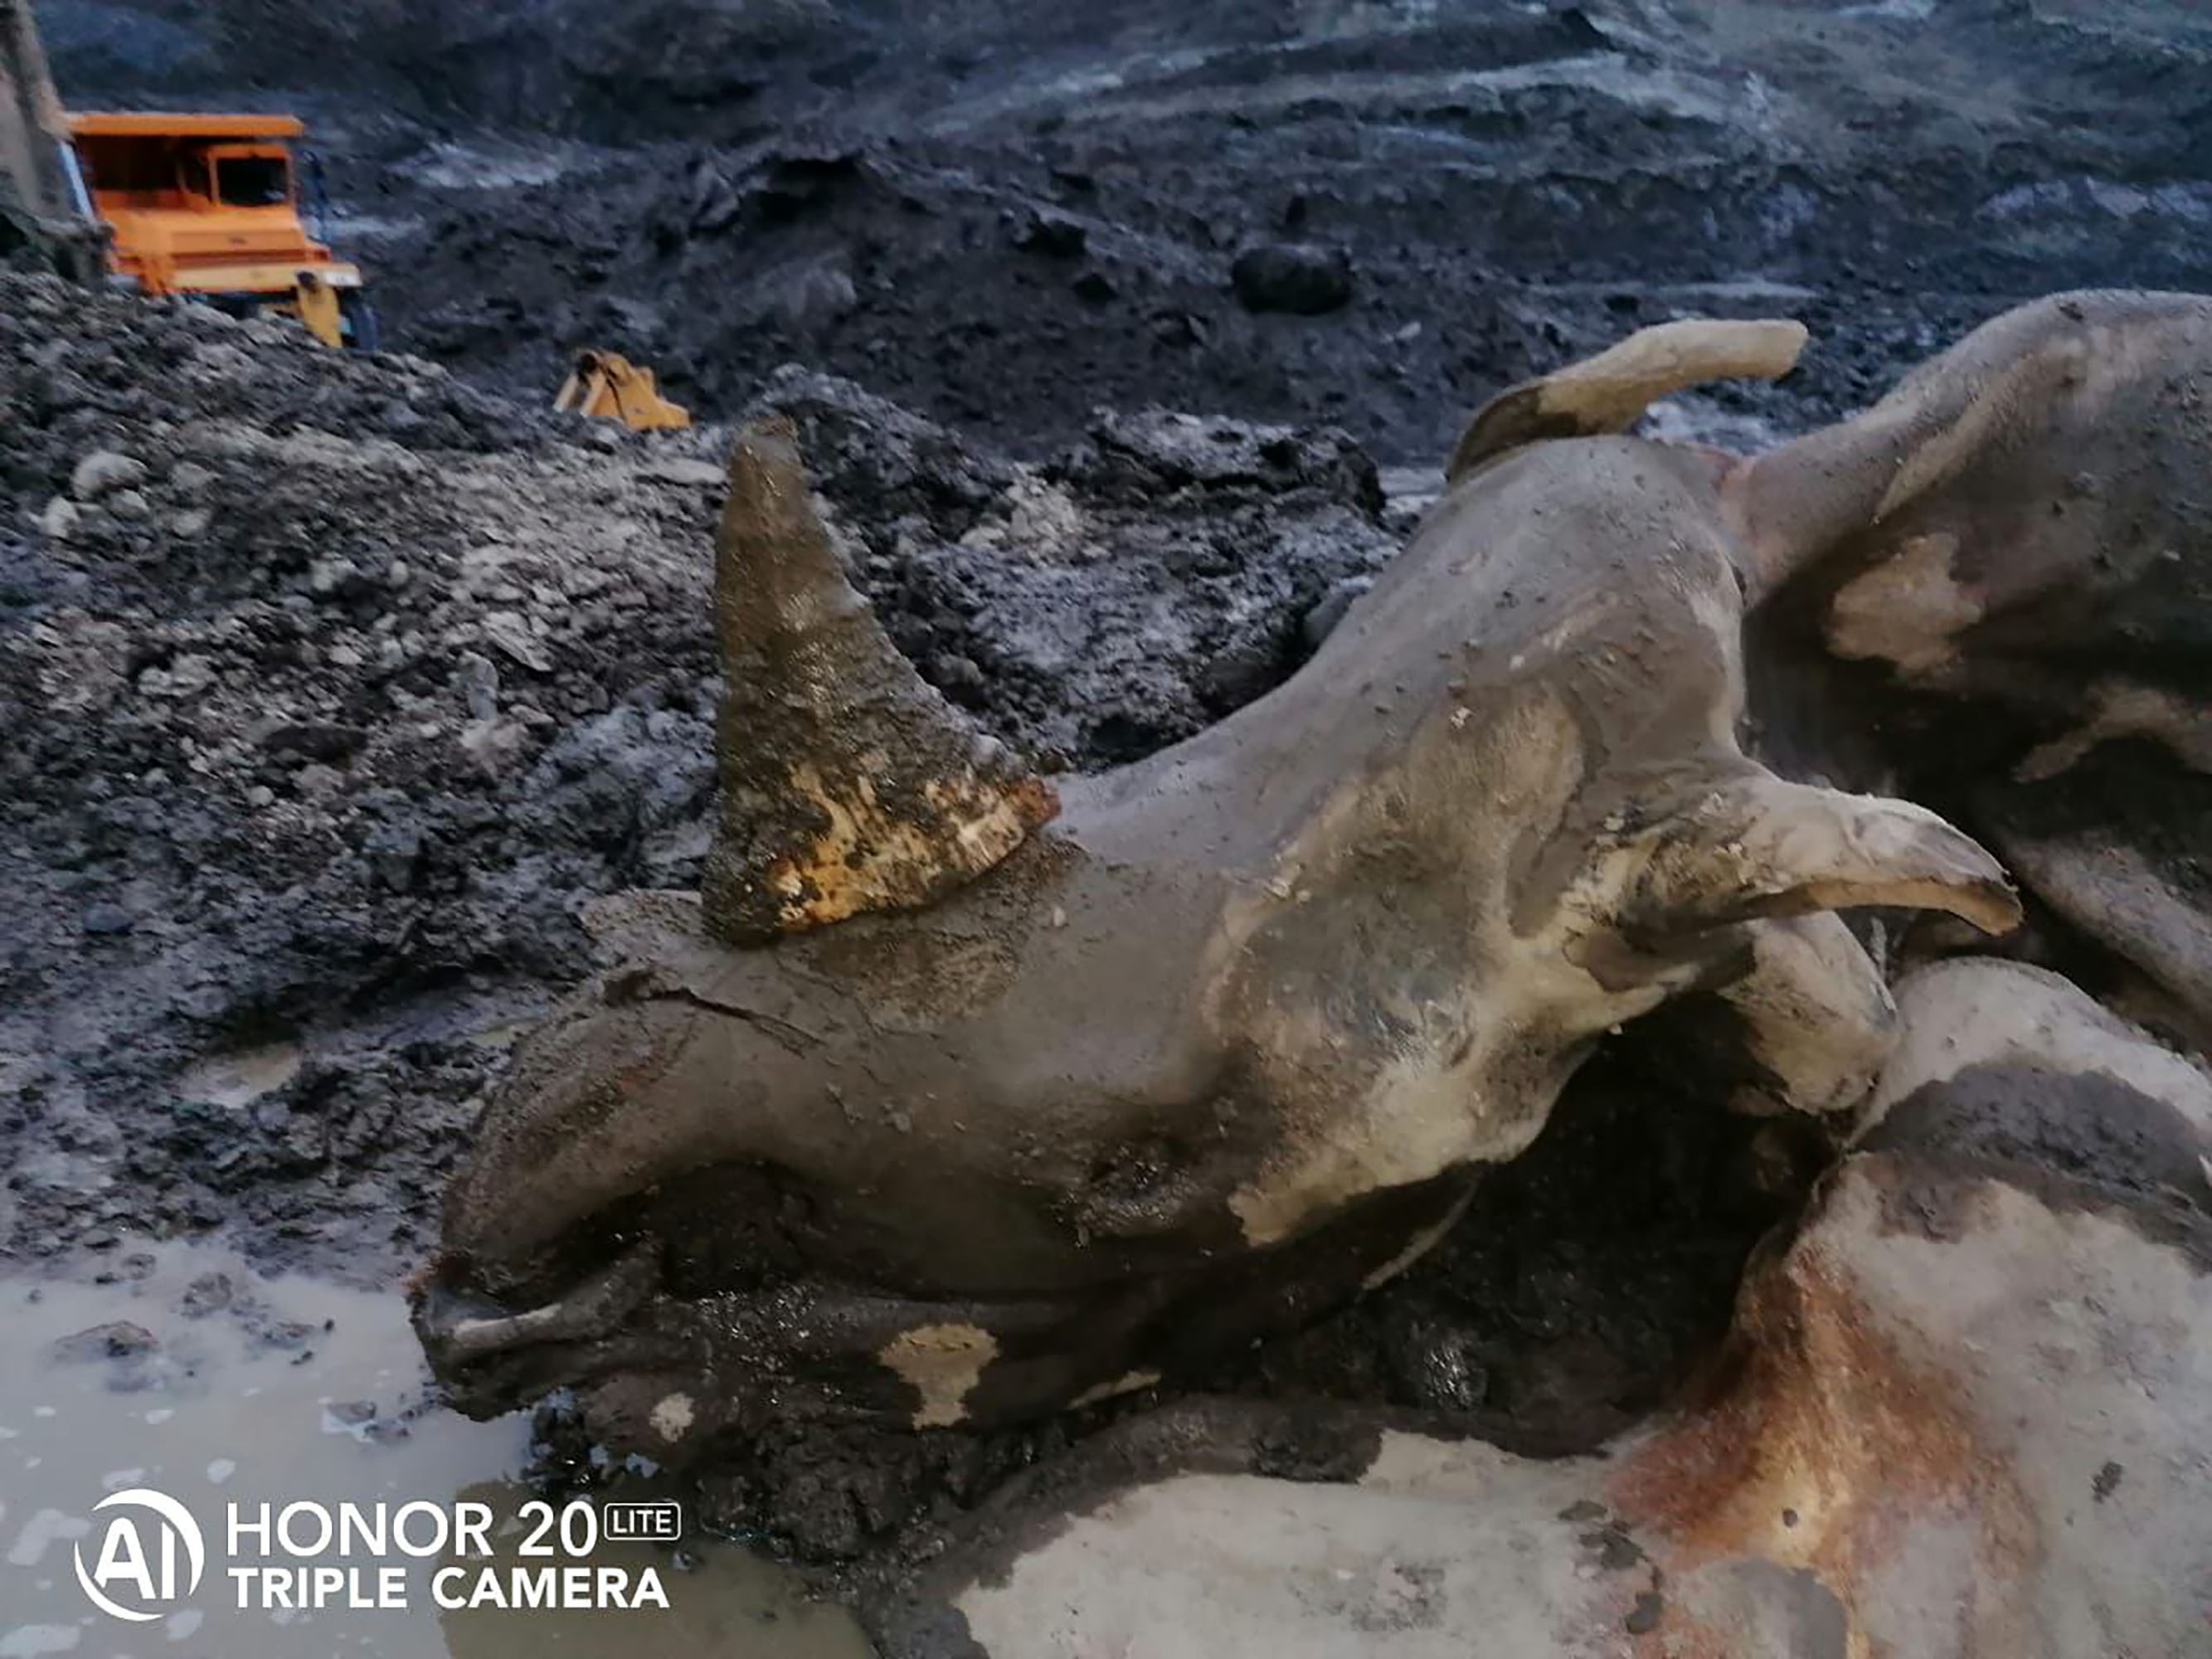 Los trabajadores de una mina de oro informaron sobre el descubrimiento de una momia de rinoceronte lanudo excepcionalmente conservada en Kolyma, en el Lejano Oriente de Rusia.